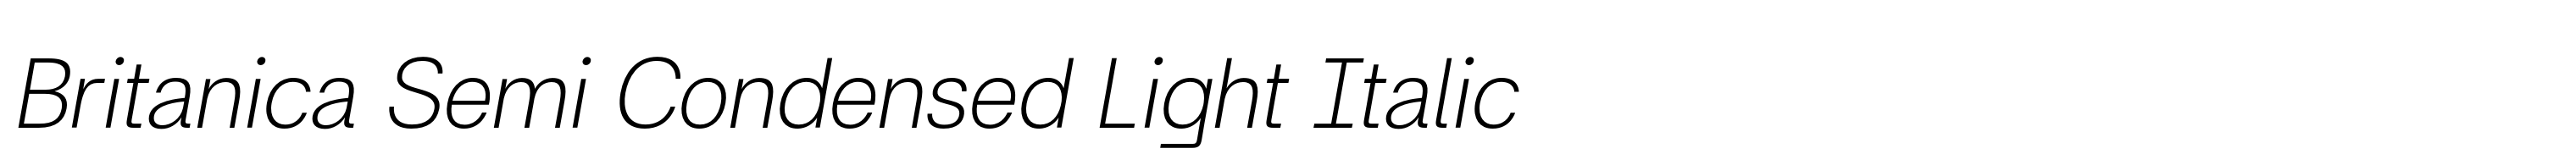 Britanica Semi Condensed Light Italic